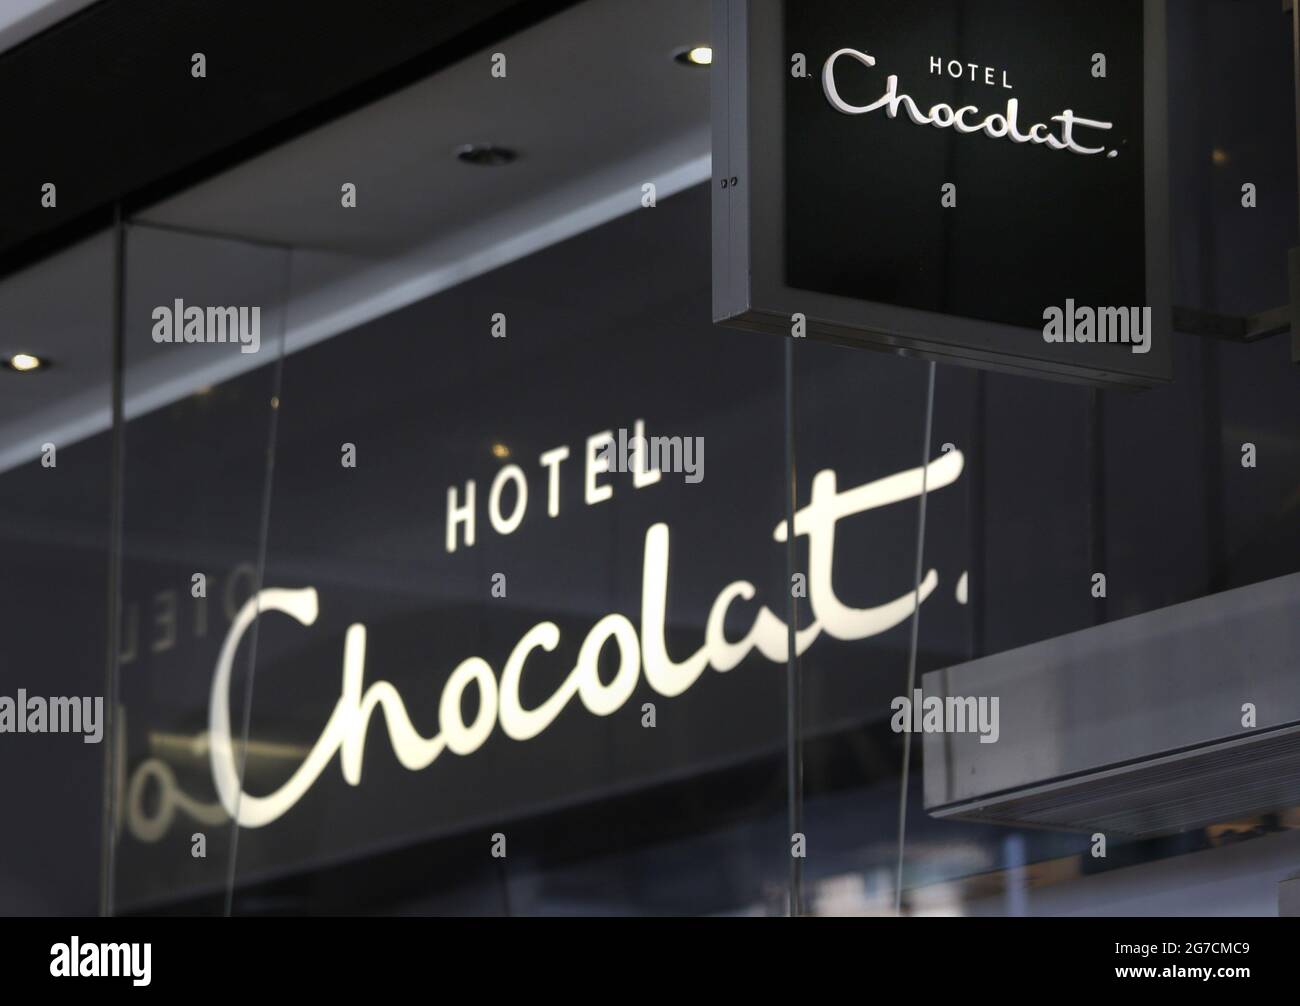 Aktenfoto vom 5/5/2016 von einem Hotel Chocolat-Geschäft in Victoria, London. Das Hotel Chocolat wird in diesem Jahr im Rahmen der Expansionspläne 250 neue Arbeitsplätze schaffen, da der Chef verriet, dass die Online-Verkäufe zum ersten Mal in seiner Geschichte die Verkaufszahlen in den Geschäften überholen werden. Ausgabedatum: Dienstag, 13. Juli 2021. Stockfoto